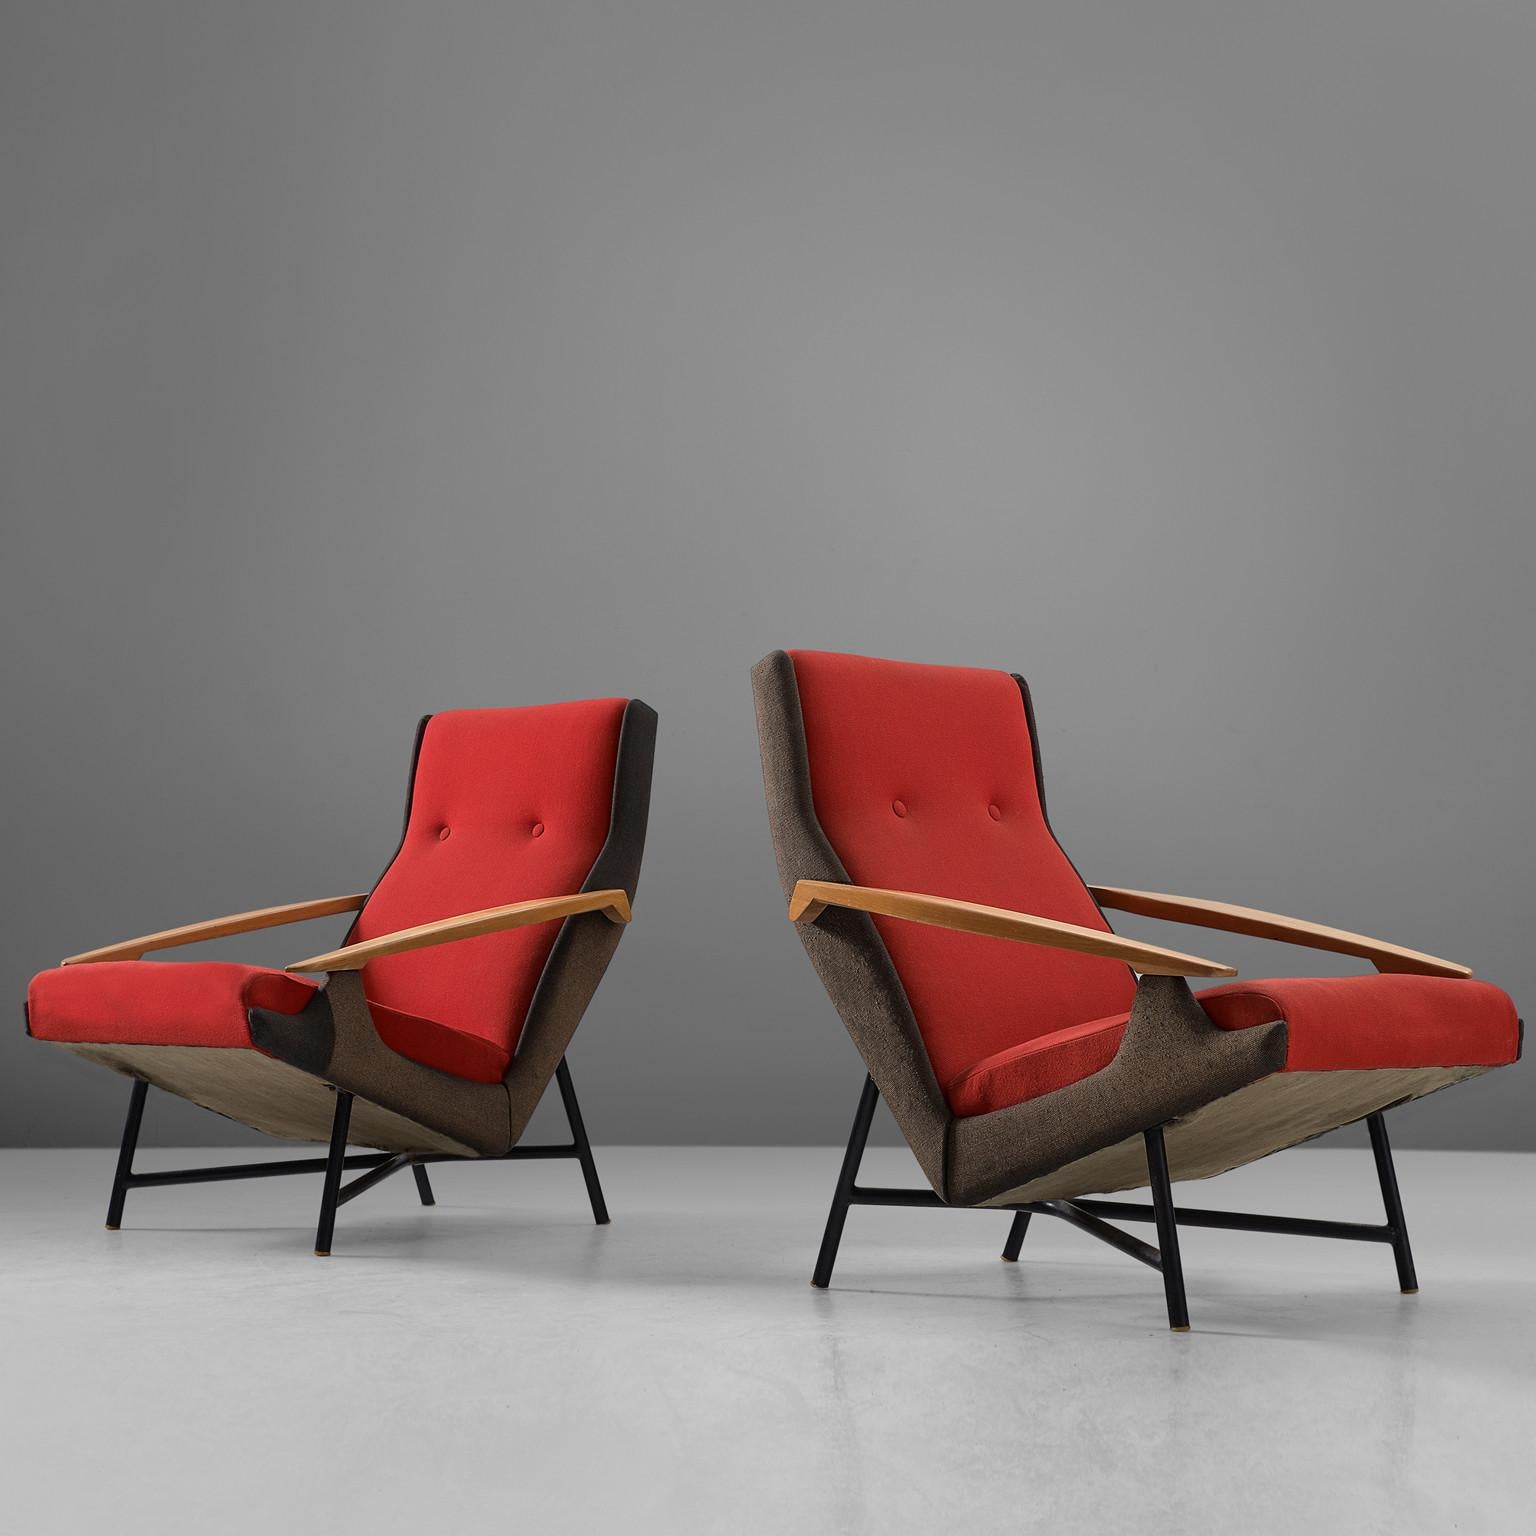 Ensemble de deux chaises longues, en hêtre, métal et tissu, par Claude Vassal, France, années 1950. 

Une paire de fauteuils modernes en tapisserie noire et rouge. Ces chaises présentent une combinaison intéressante de matériaux et obtiennent ainsi